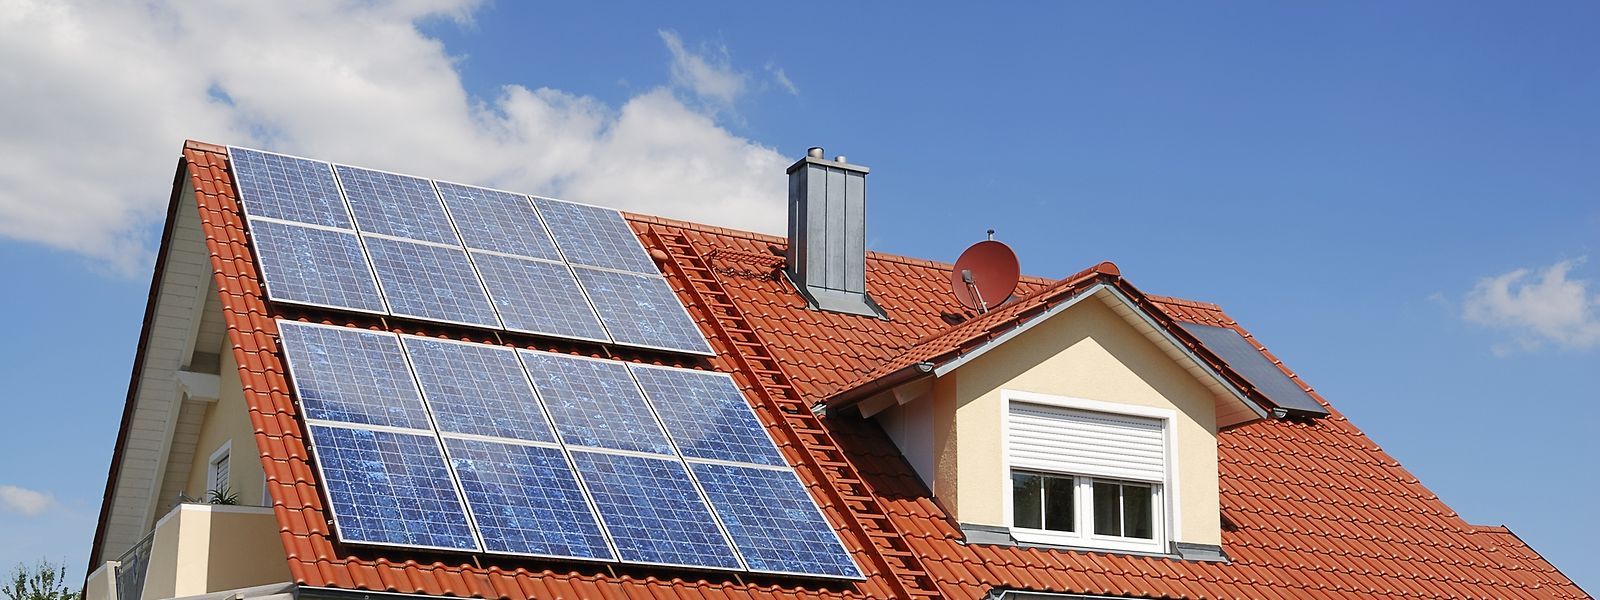 Au Luxembourg, chaque toiture pourra désormais accueillir son installation de panneaux solaires.